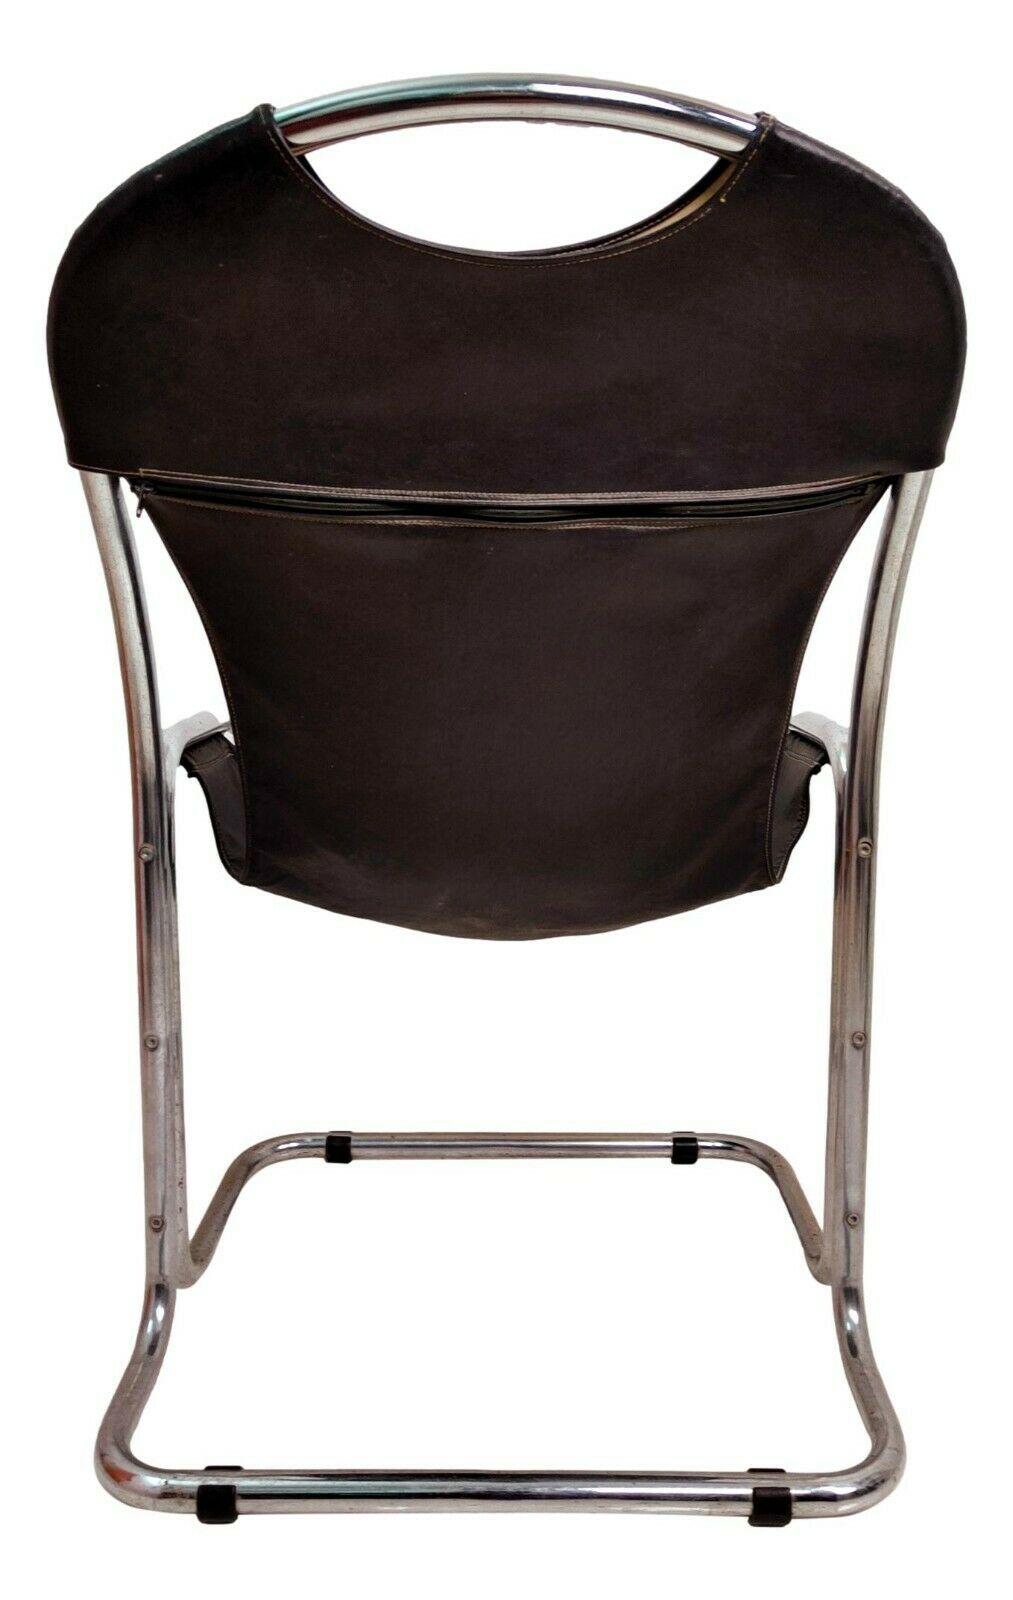 Chaise de collection design, clairement inspirée par le Bauhaus, fabriquée en tube de métal chromé, revêtement simple feuille en éco-cuir noir

Il mesure 90 cm de hauteur, 56 cm de largeur et 56 cm de profondeur

En très bon état, comme le